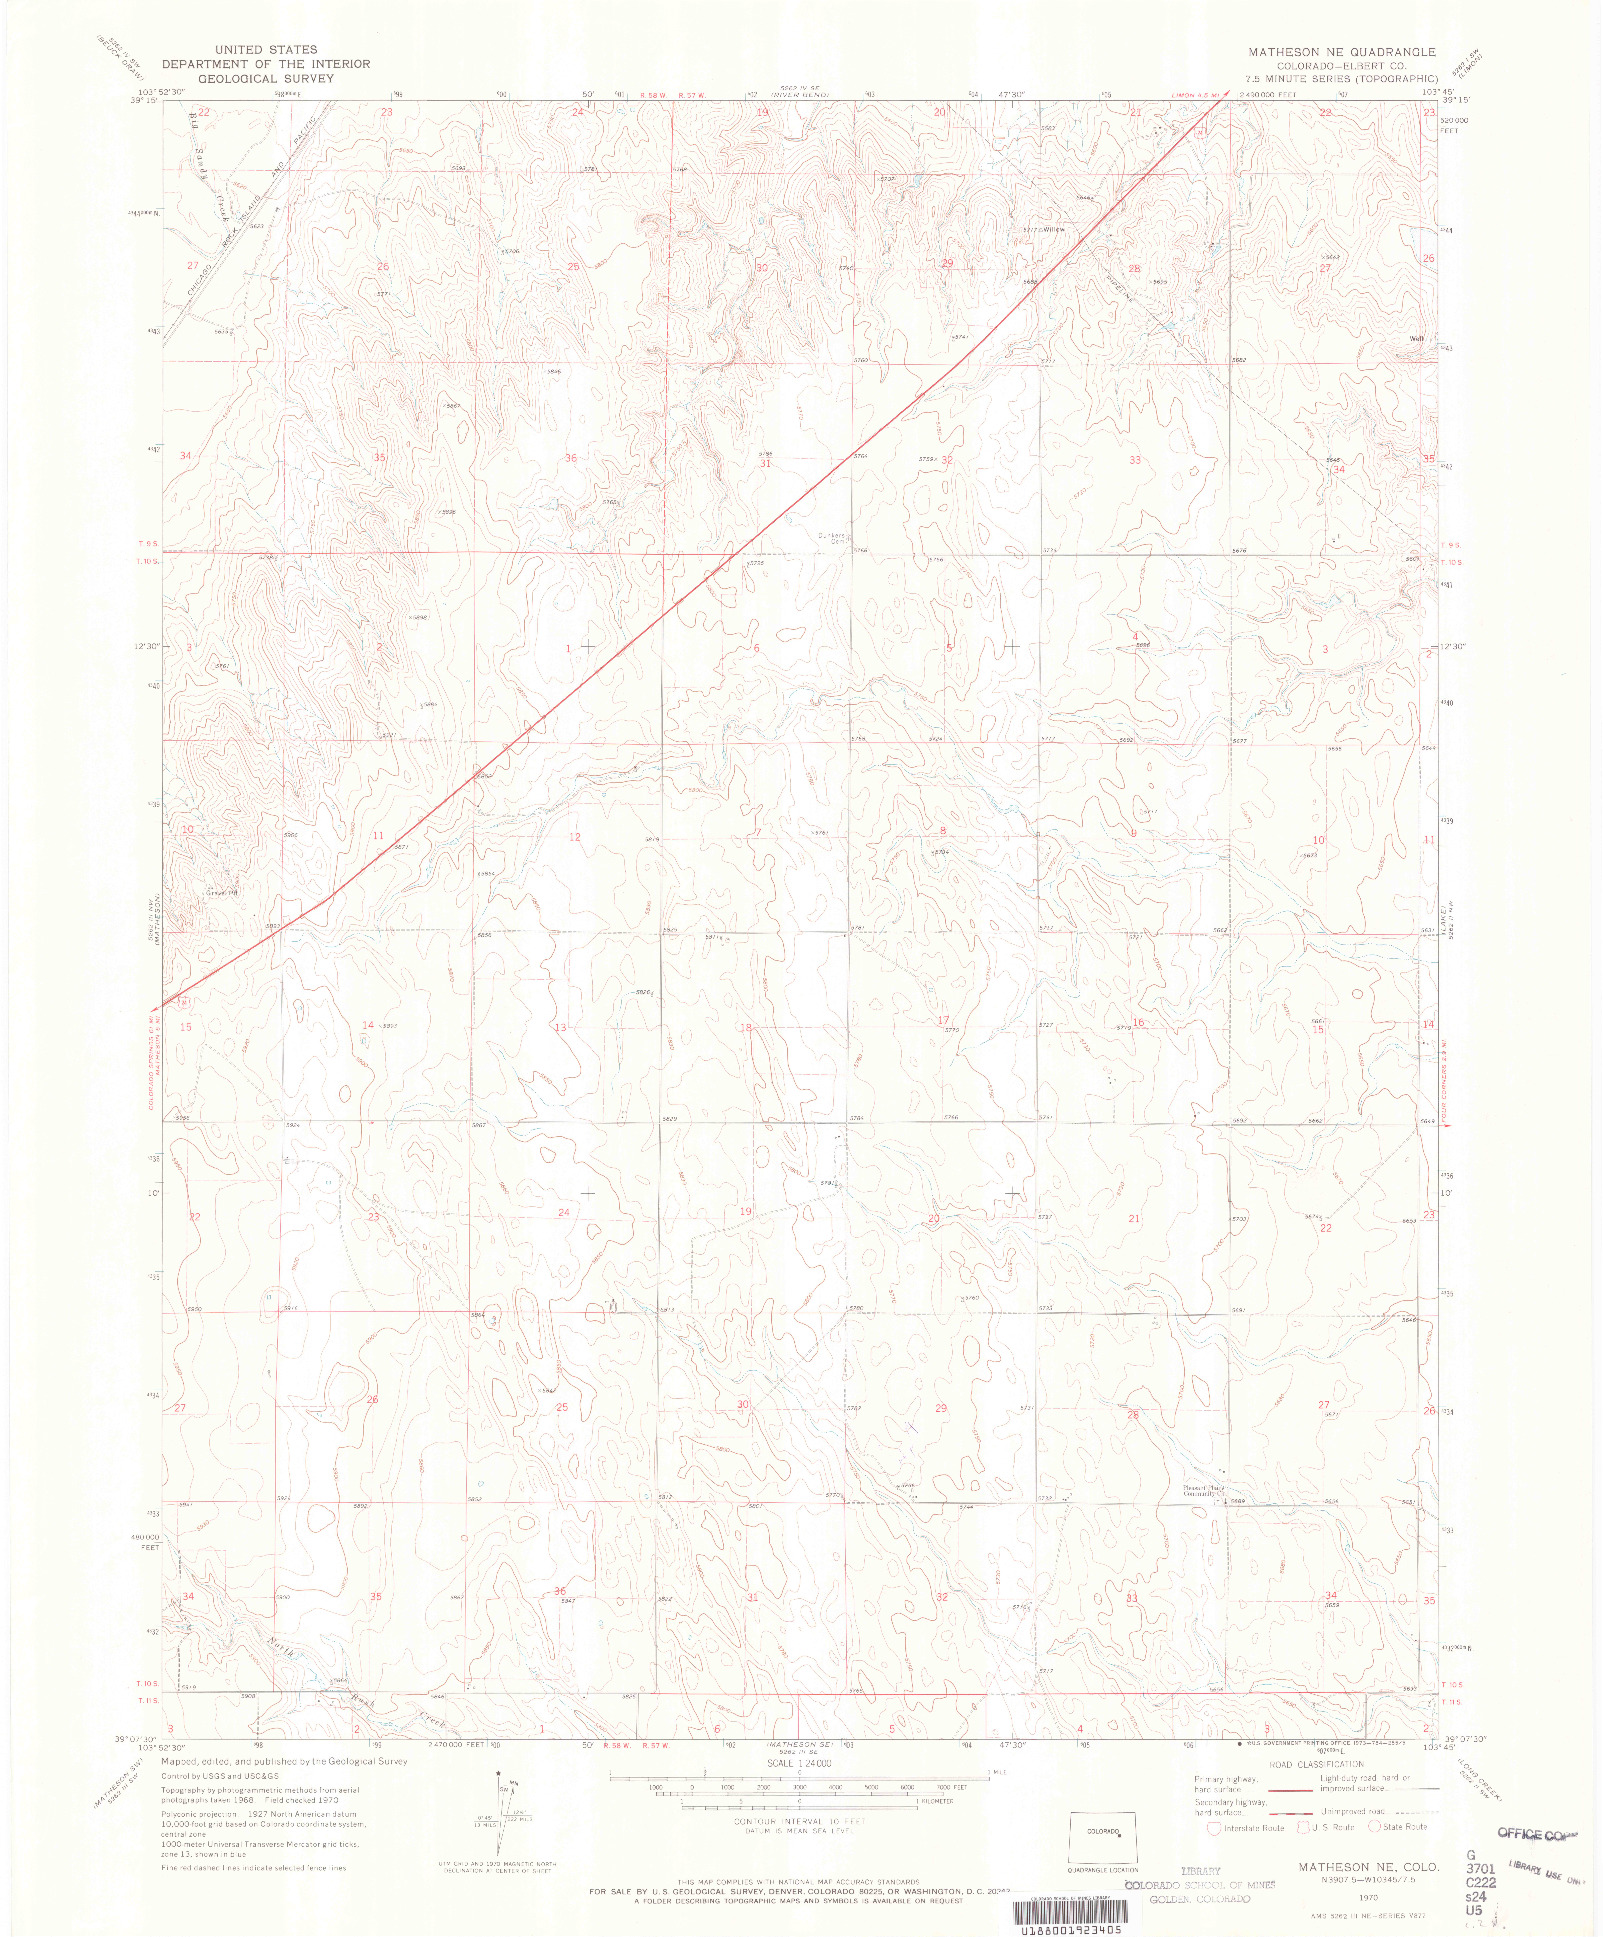 USGS 1:24000-SCALE QUADRANGLE FOR MATHESON NE, CO 1970